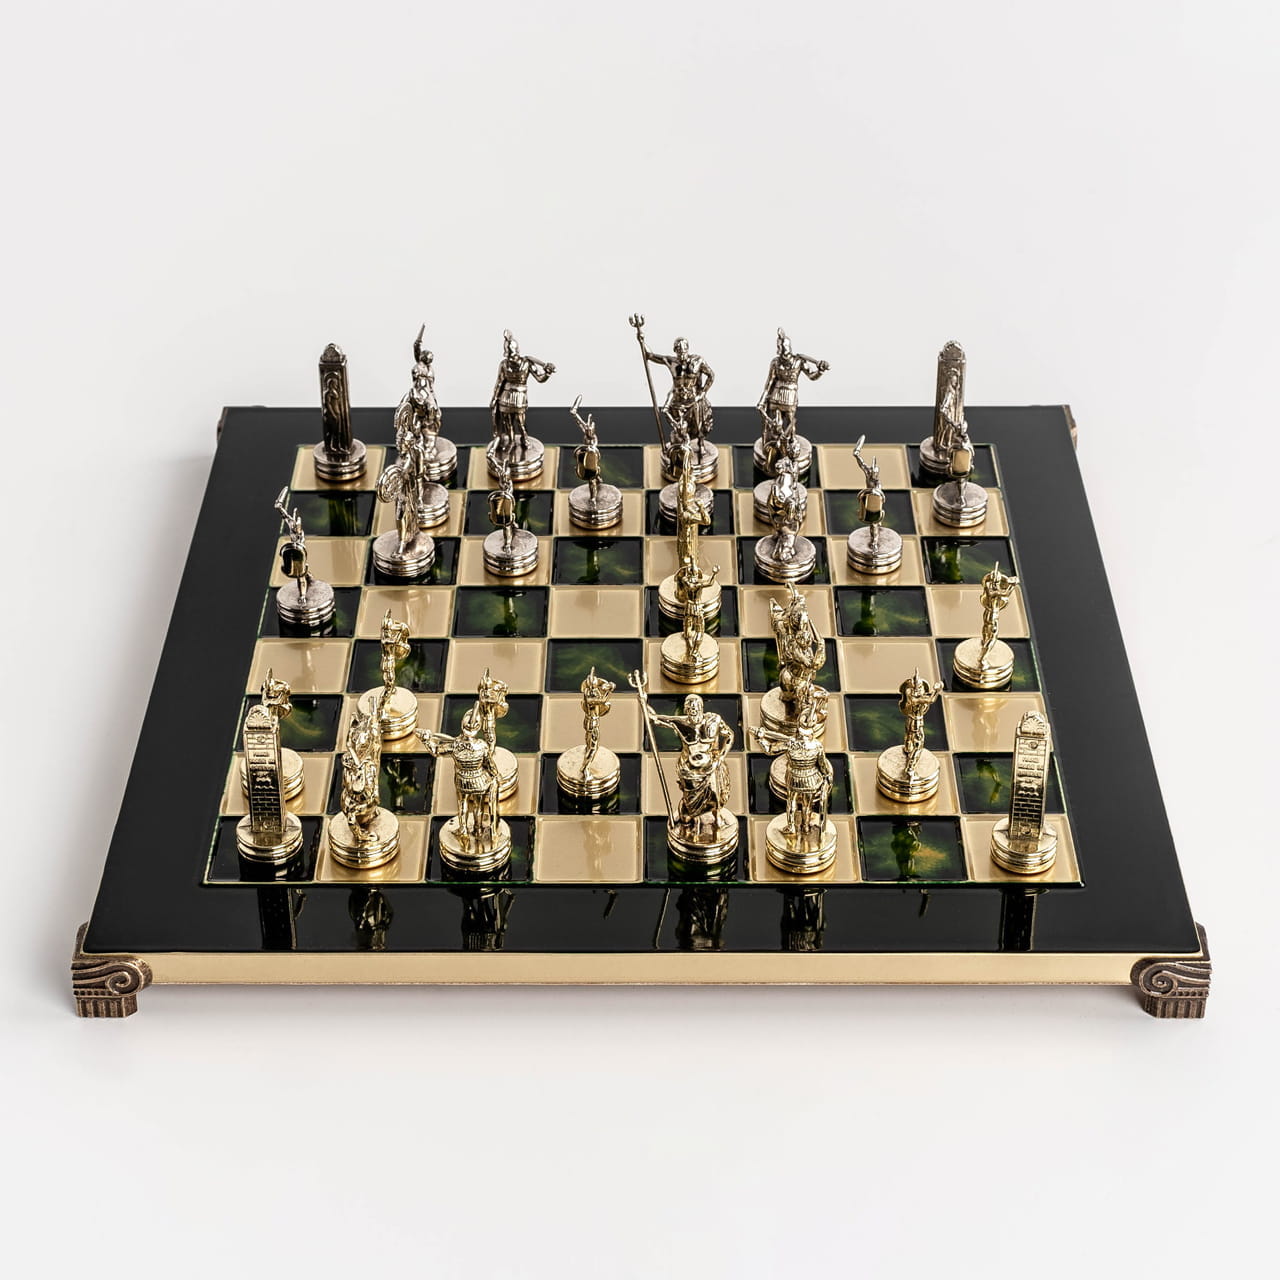 Jak ustawi pionki w szachach?